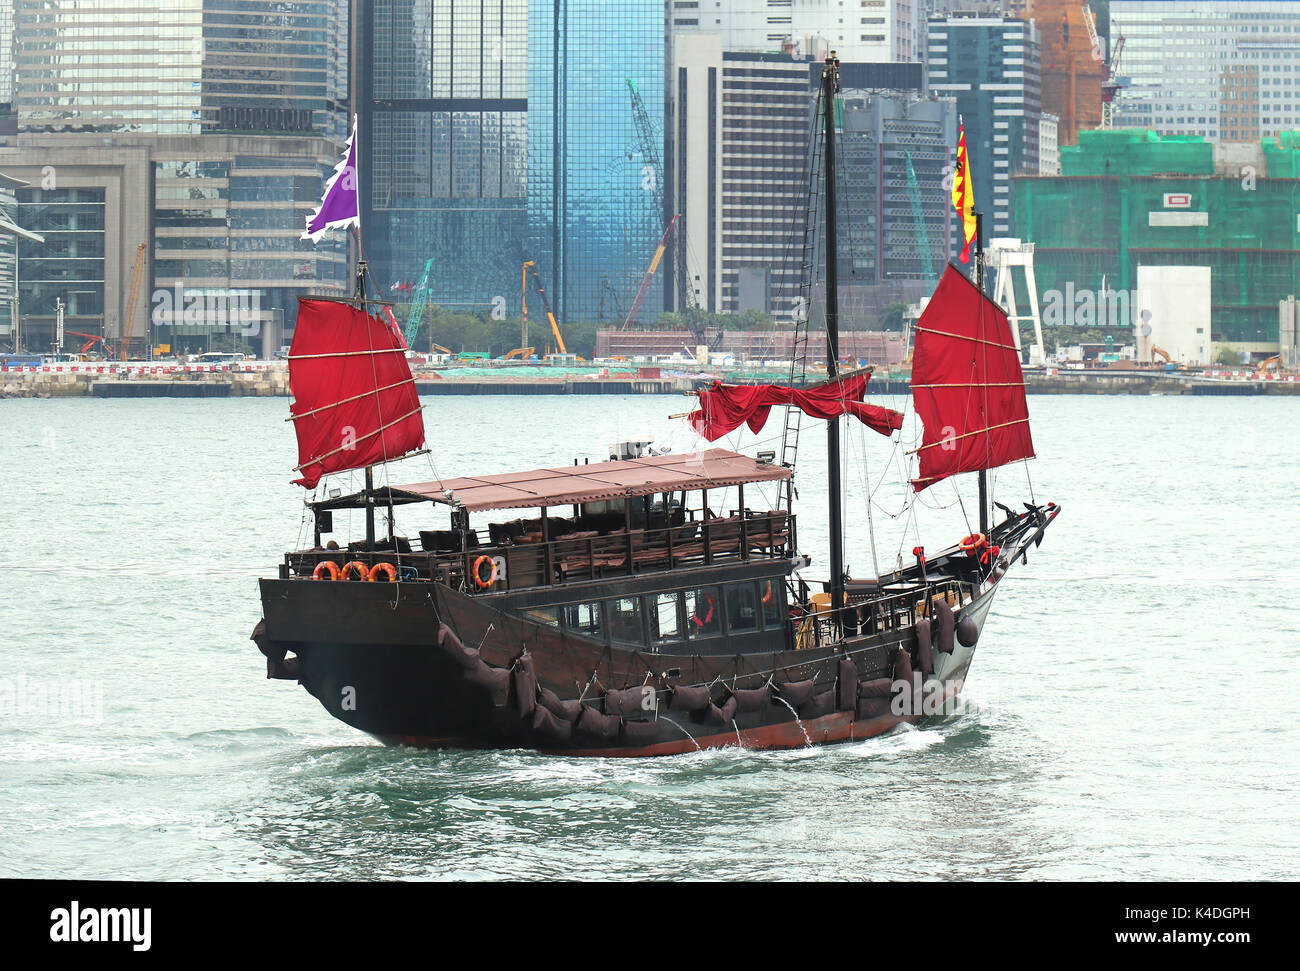 Junk ist eine Art von alten Chinesischen Segelschiff, die noch heute in Verwendung ist in Hongkong als touristische Attraktion Stockfoto